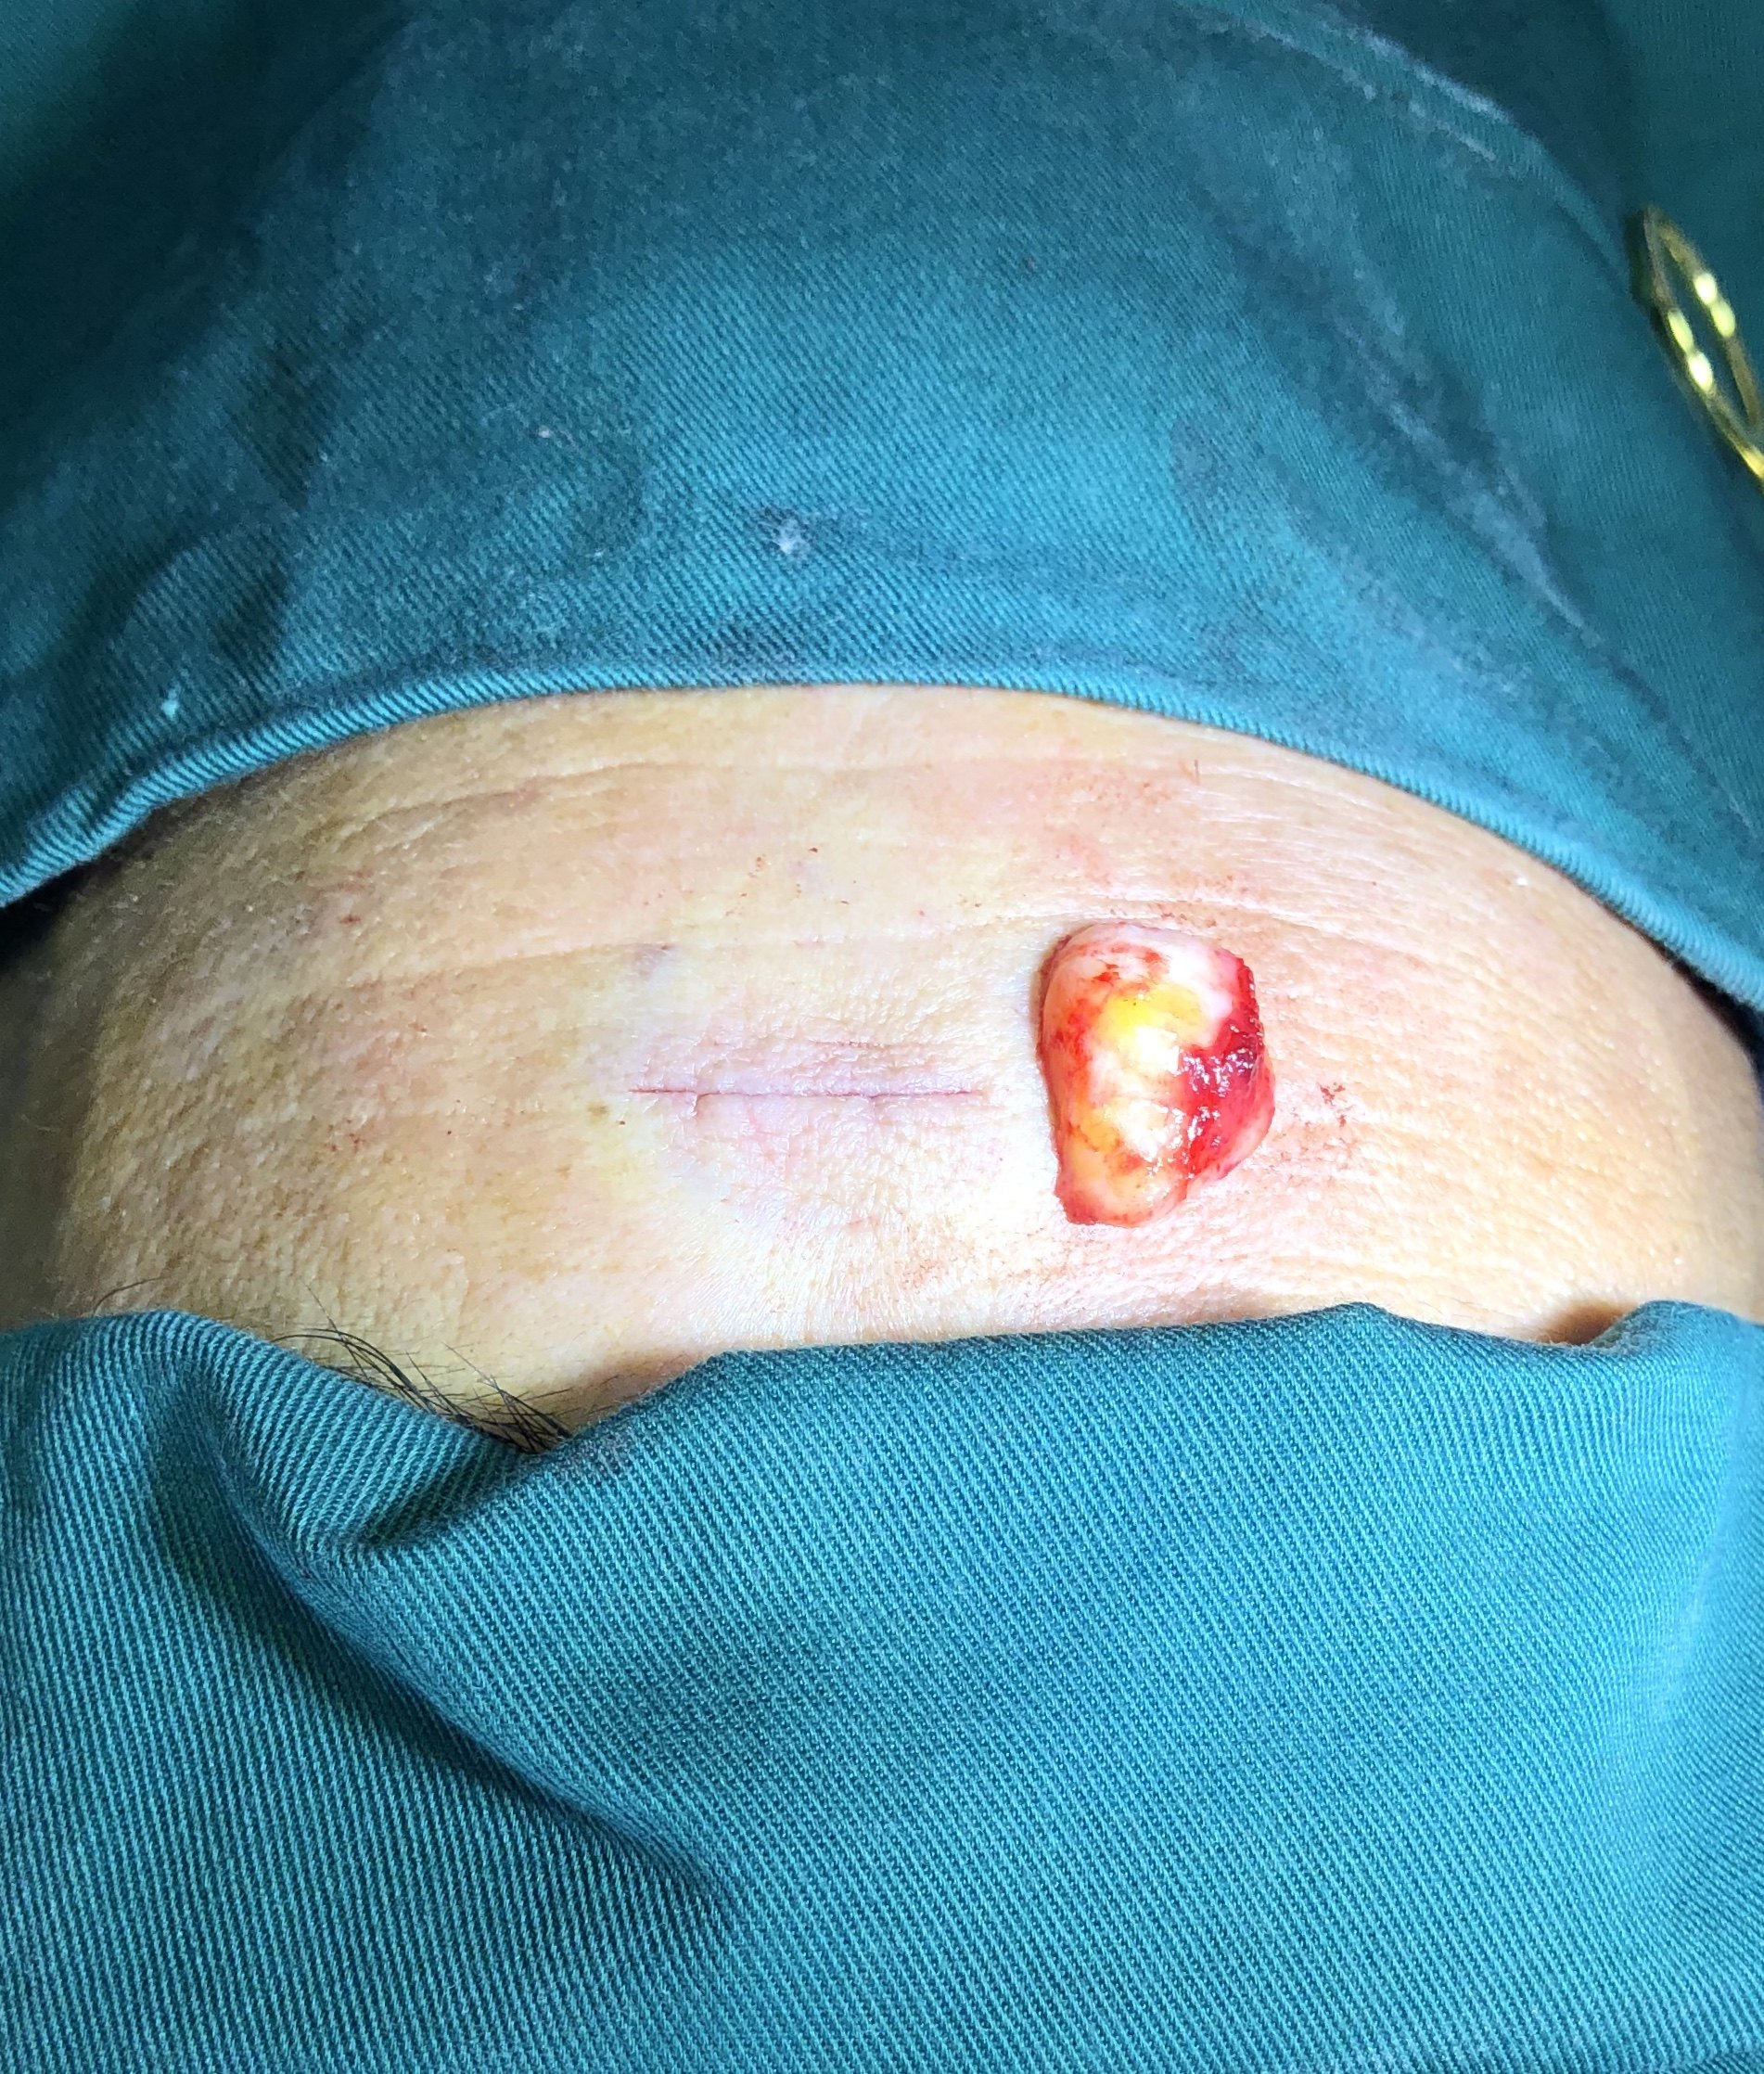 脂肪瘤拆线后的图片图片